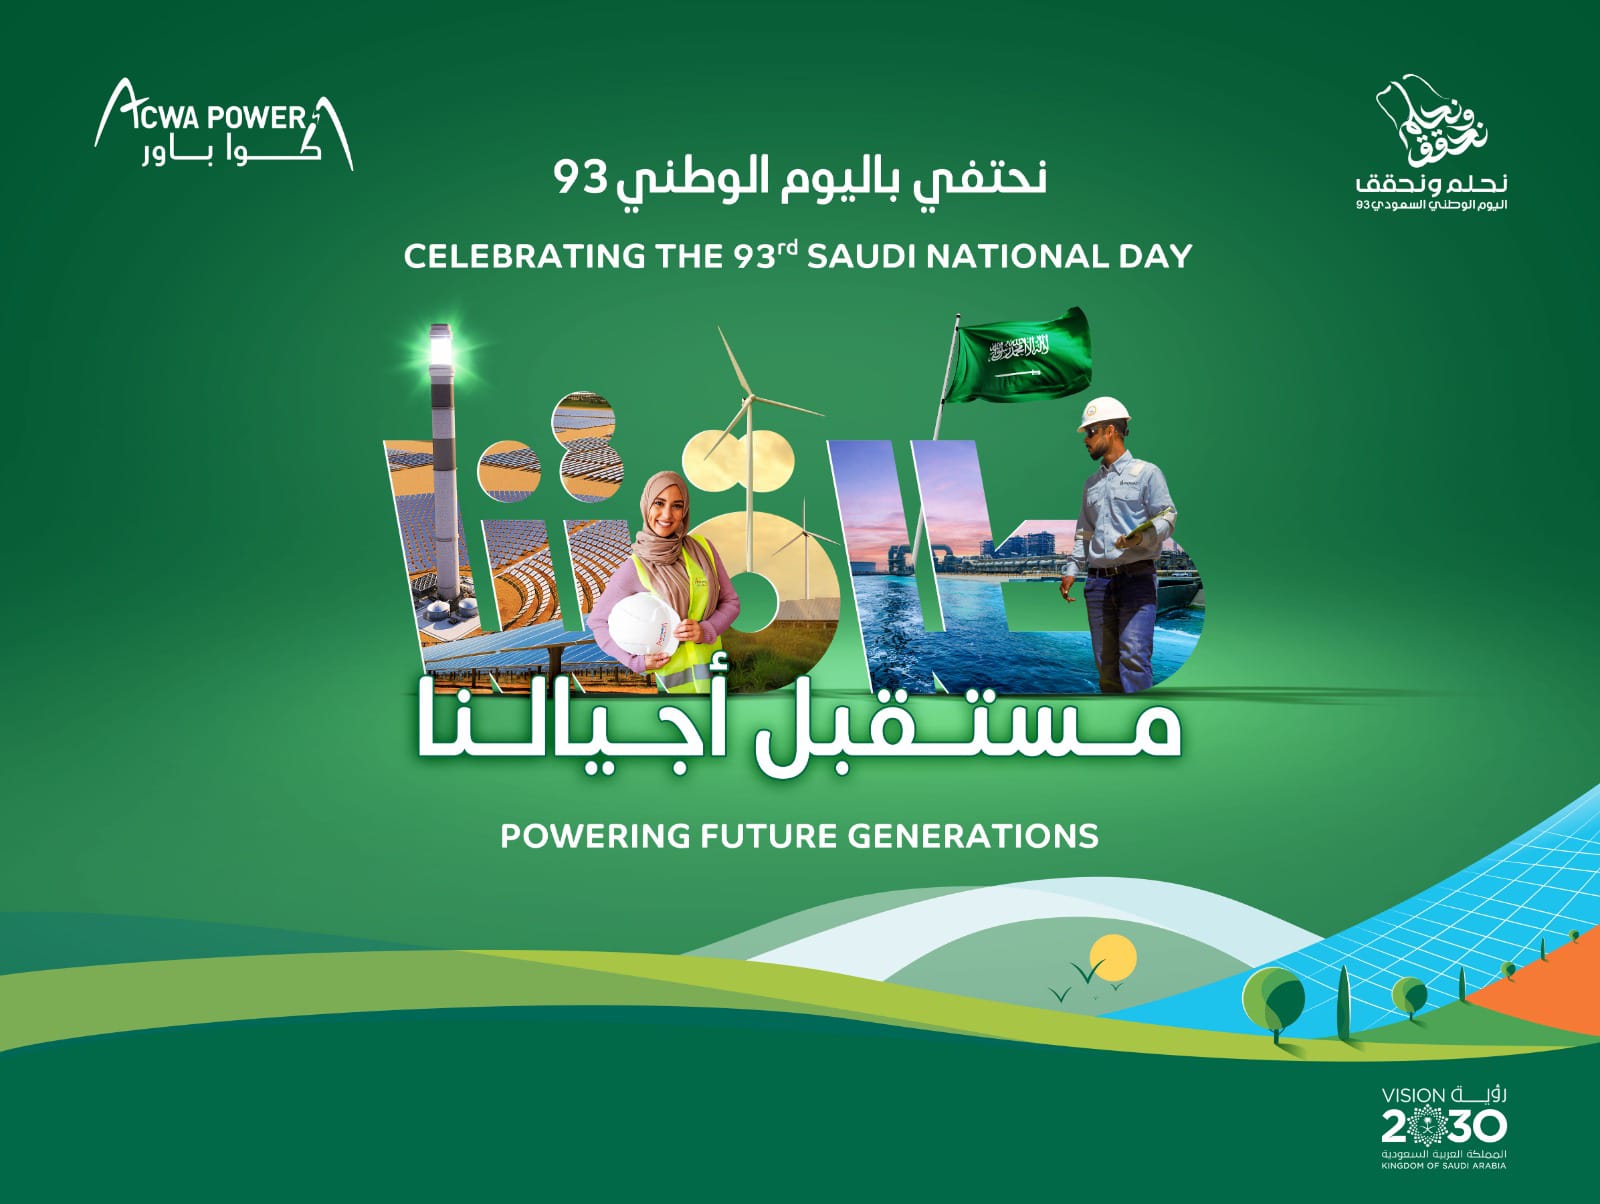 شعار احتفالات أكوا باور باليوم الوطني السعودي الـ93